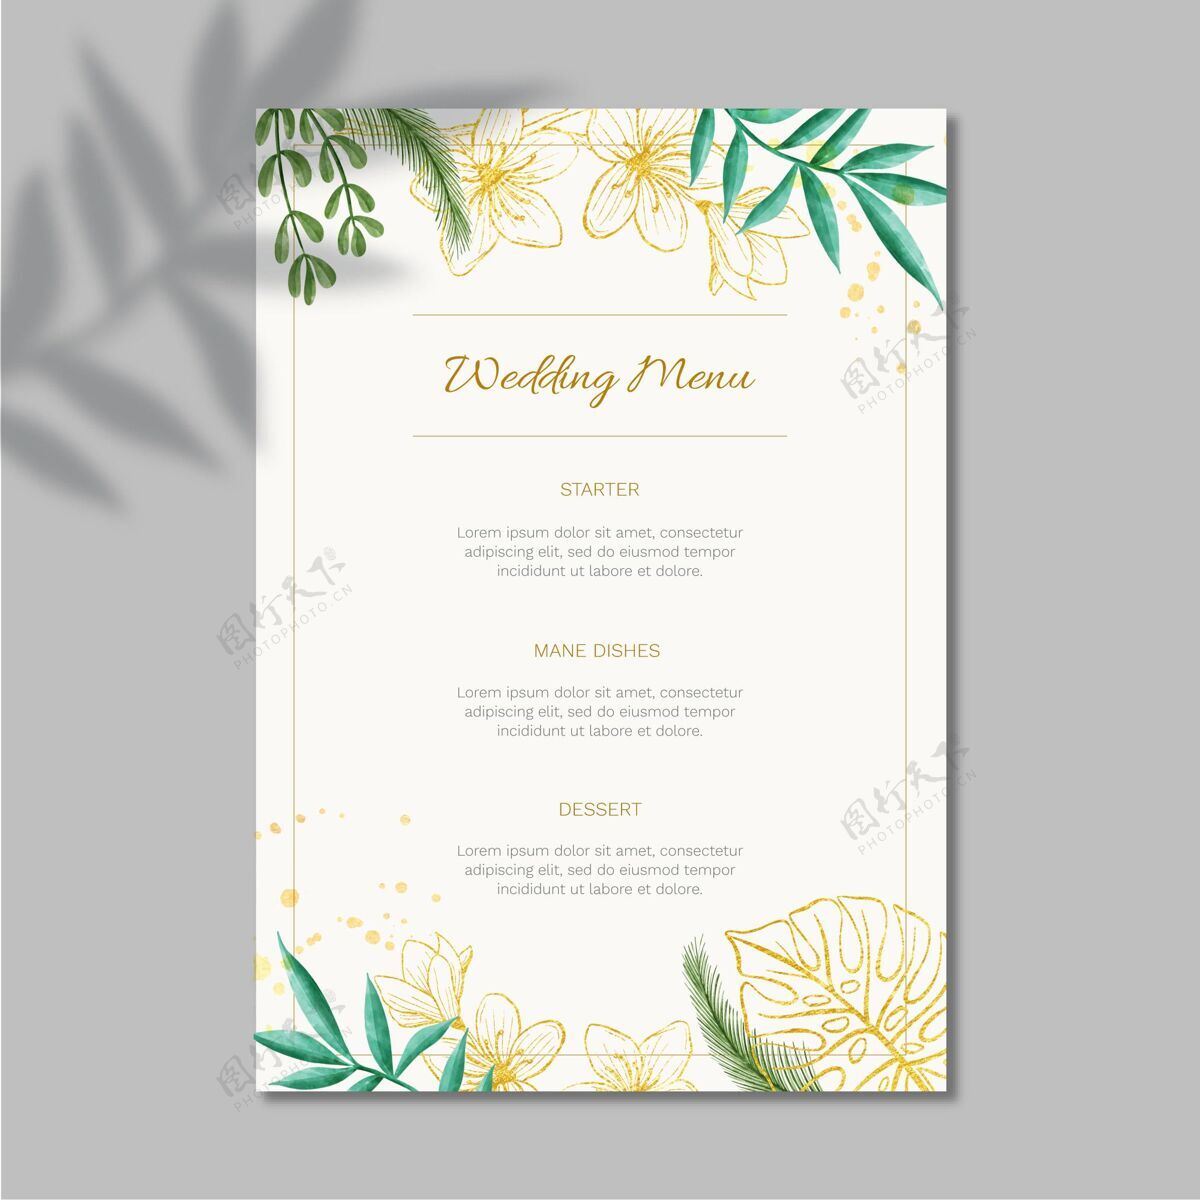 婚礼模板花卉婚礼菜单模板设计婚礼花卉设计准备打印